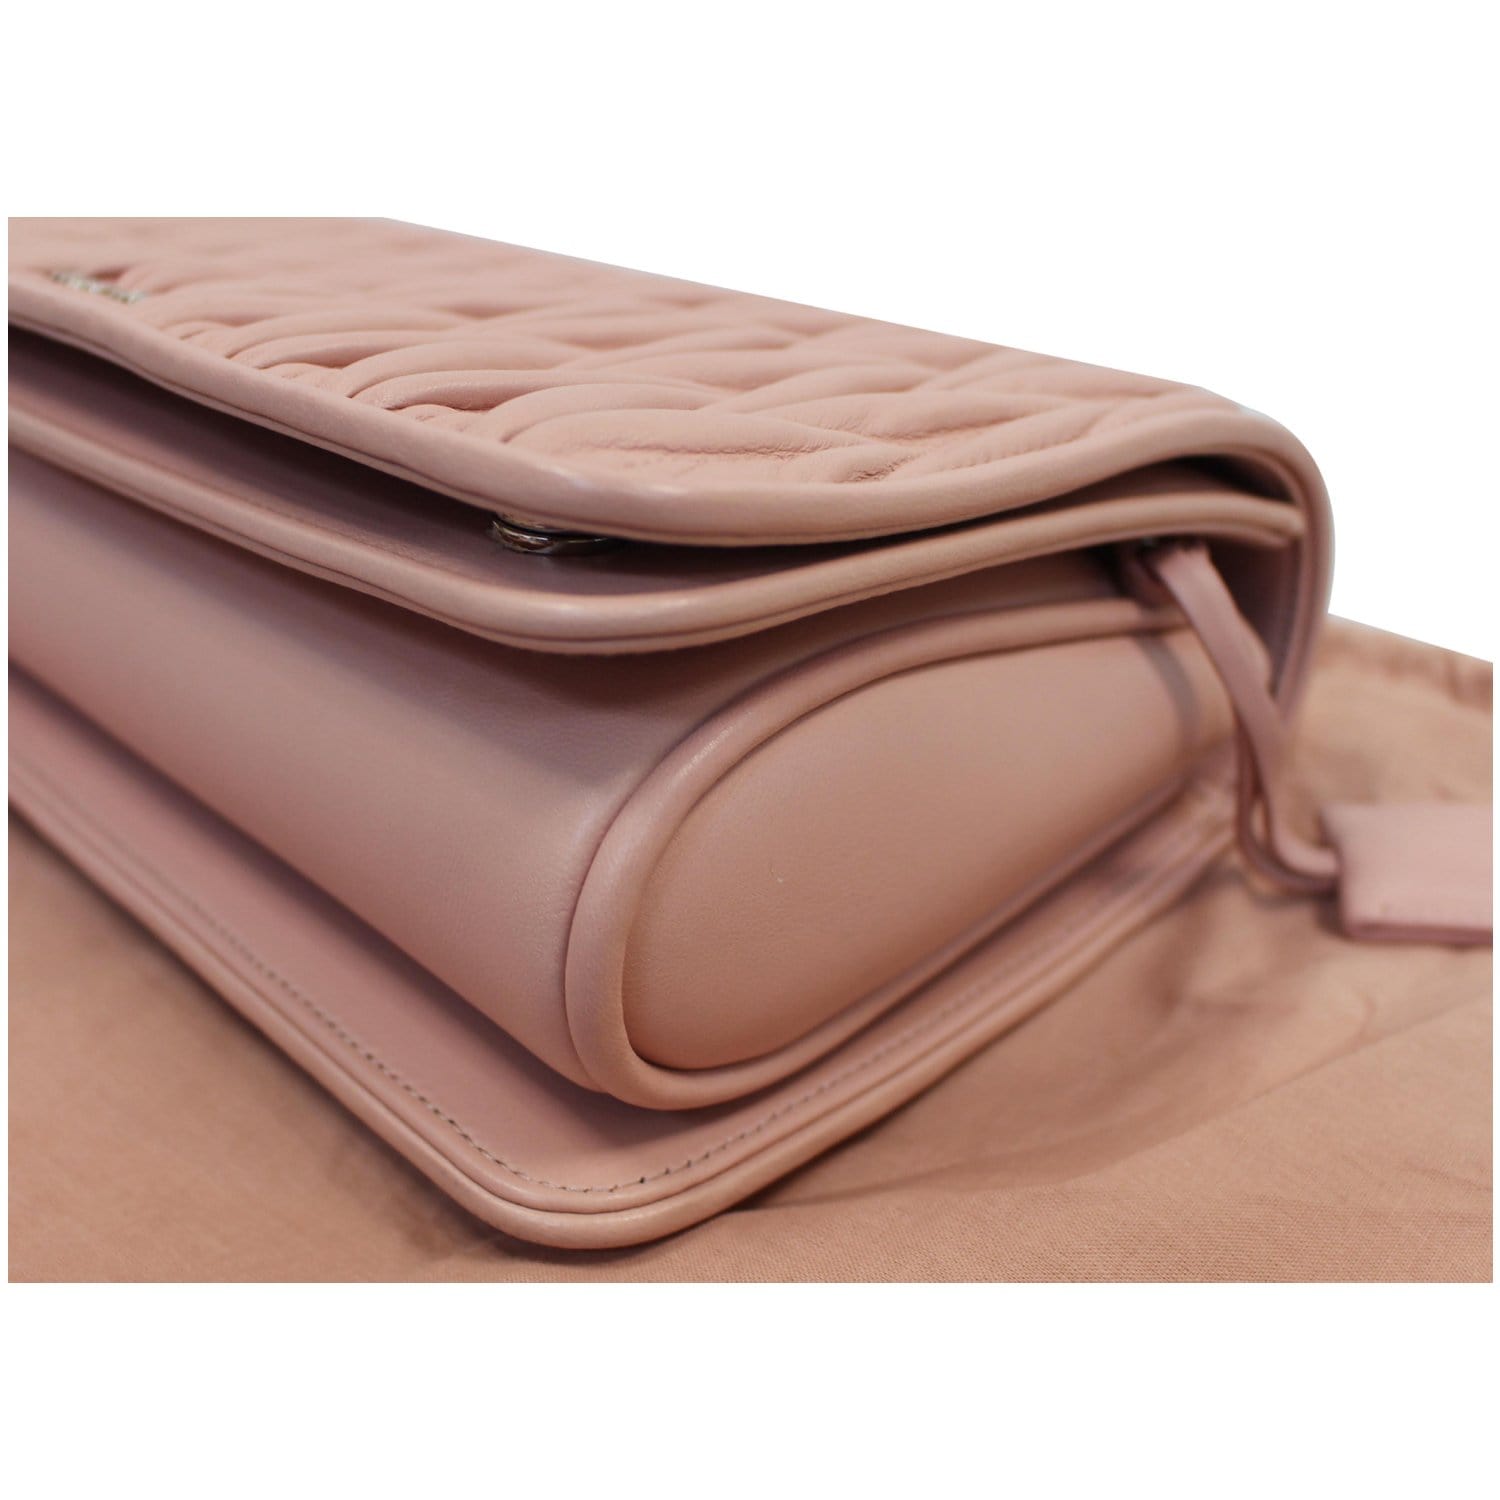 Miu Miu, Bags, Miu Miu Medium Nude Top Handle Leather Bag